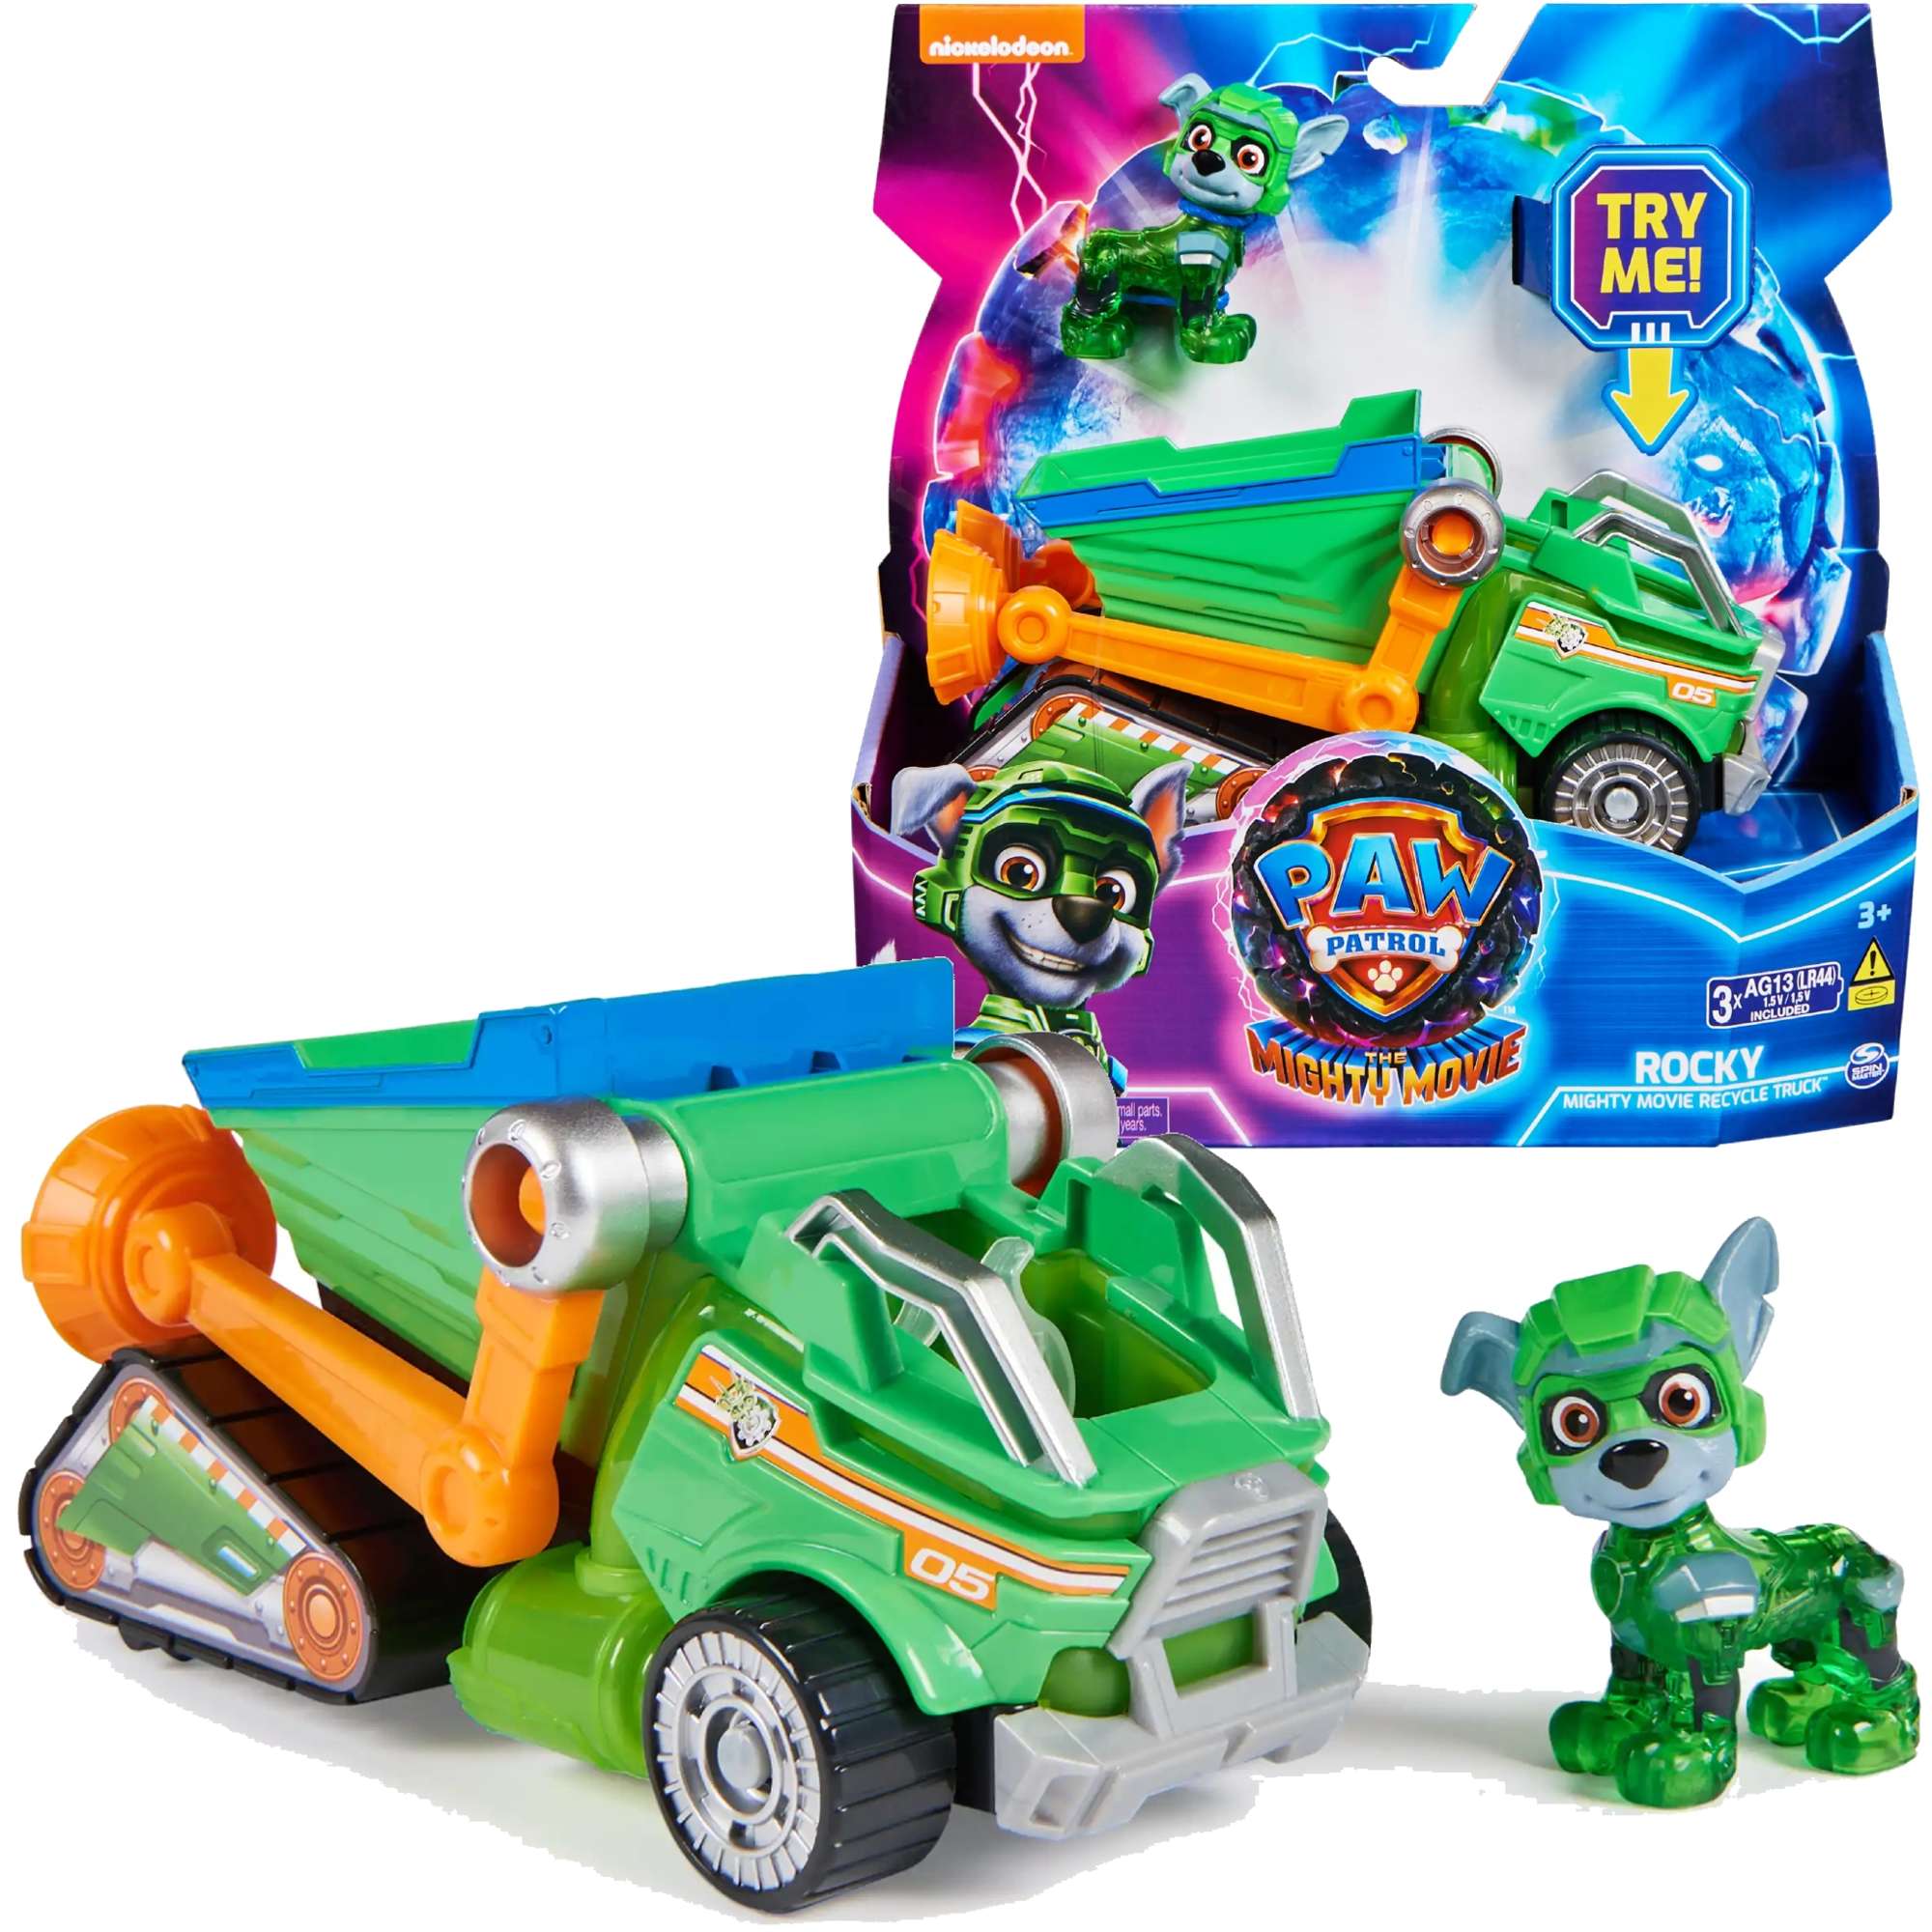 Psi Patrol The Mighty Movie Wielki Film Zestaw figurka Rocky zielone auto pojazd do recyklingu wiato dwik